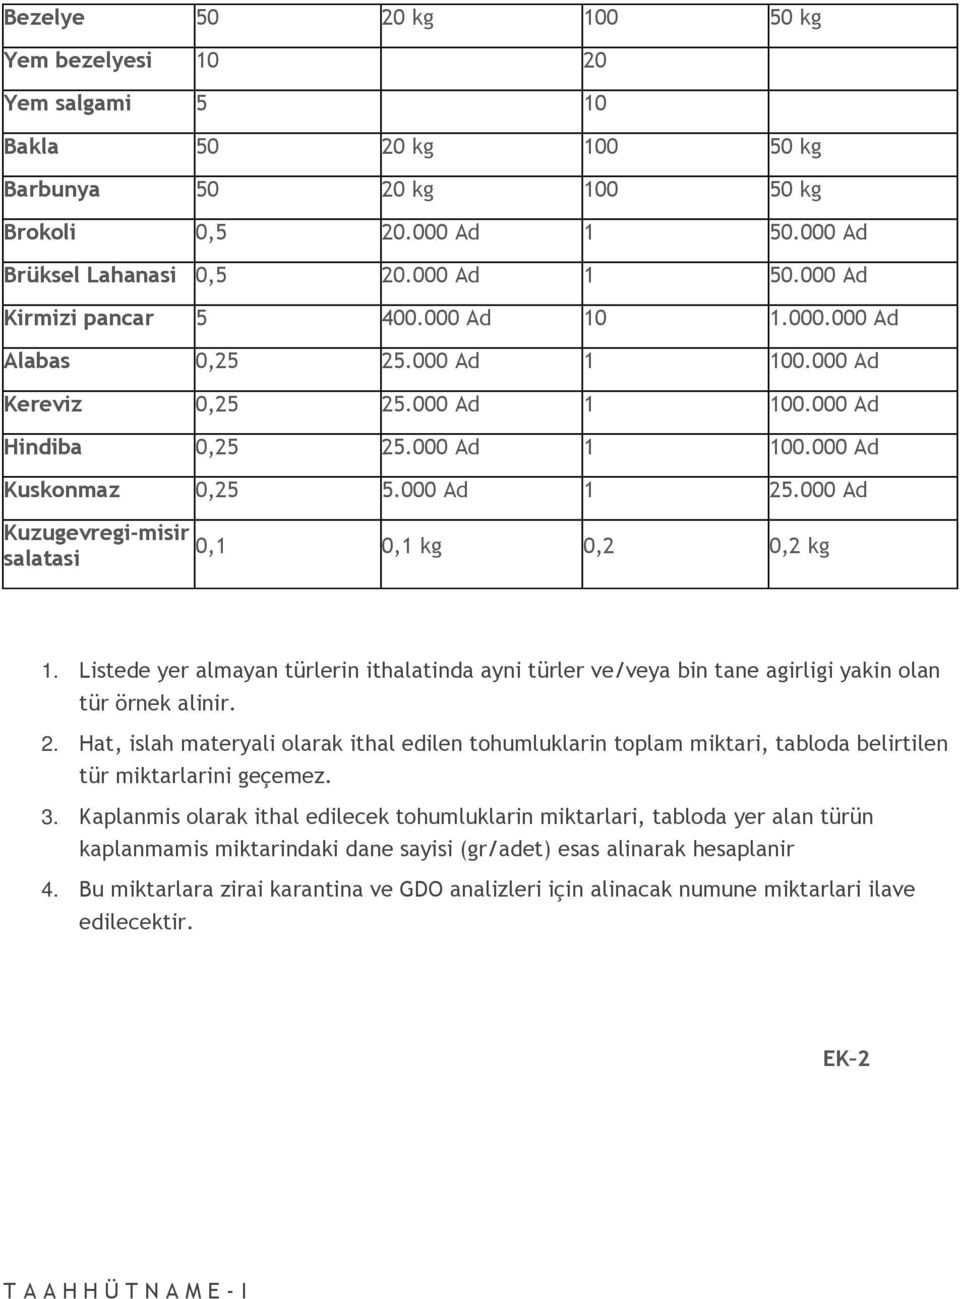 000 Ad Kuzugevregi-misir salatasi 0,1 0,1 kg 0,2 0,2 kg 1. Listede yer almayan türlerin ithalatinda ayni türler ve/veya bin tane agirligi yakin olan tür örnek alinir. 2.